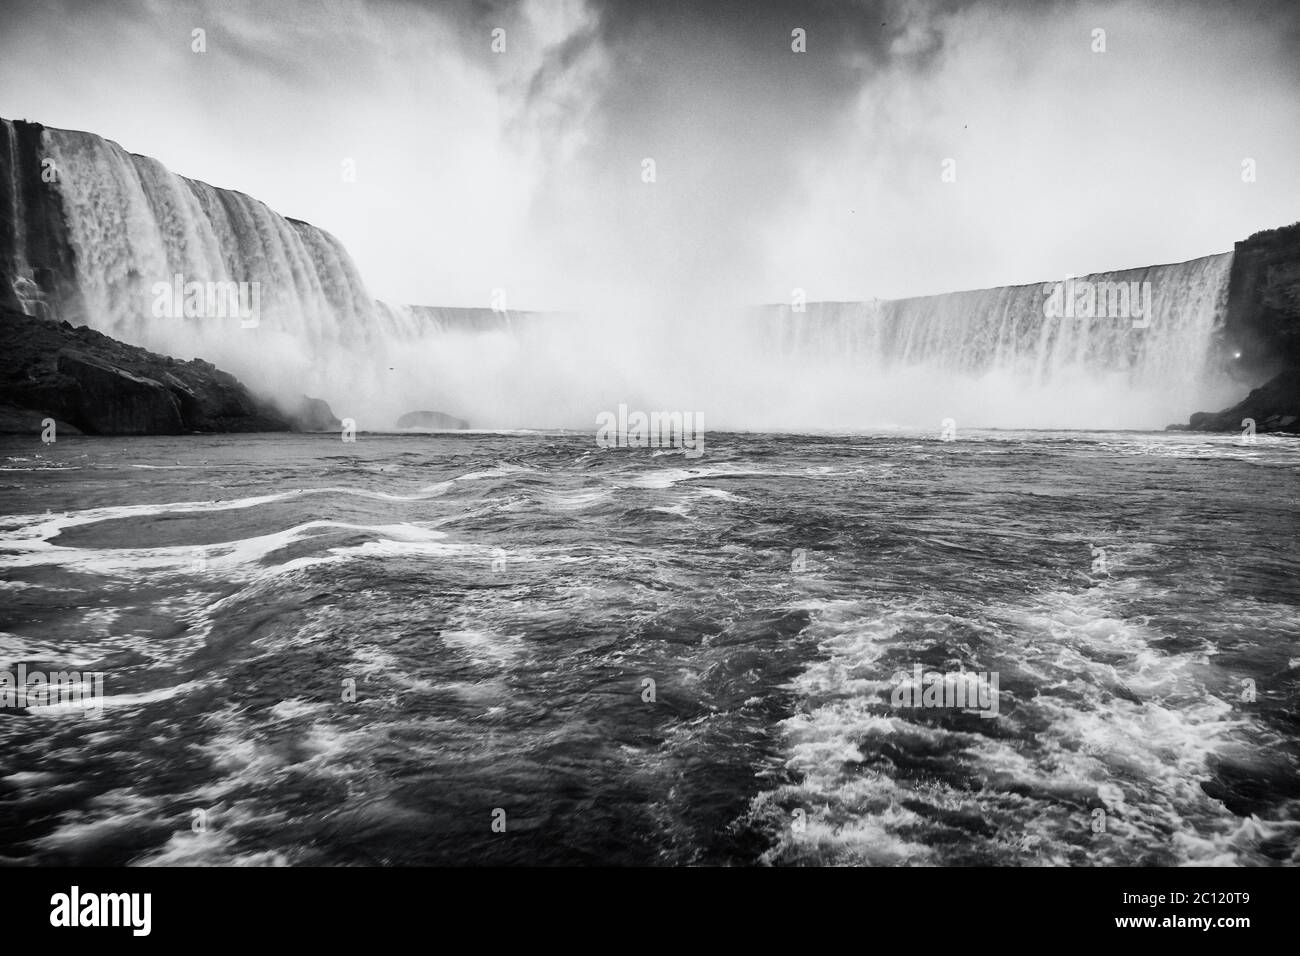 The rapids in the Niagara River during a cloudy day, Niagara Falls, Ontario, Canada Stock Photo